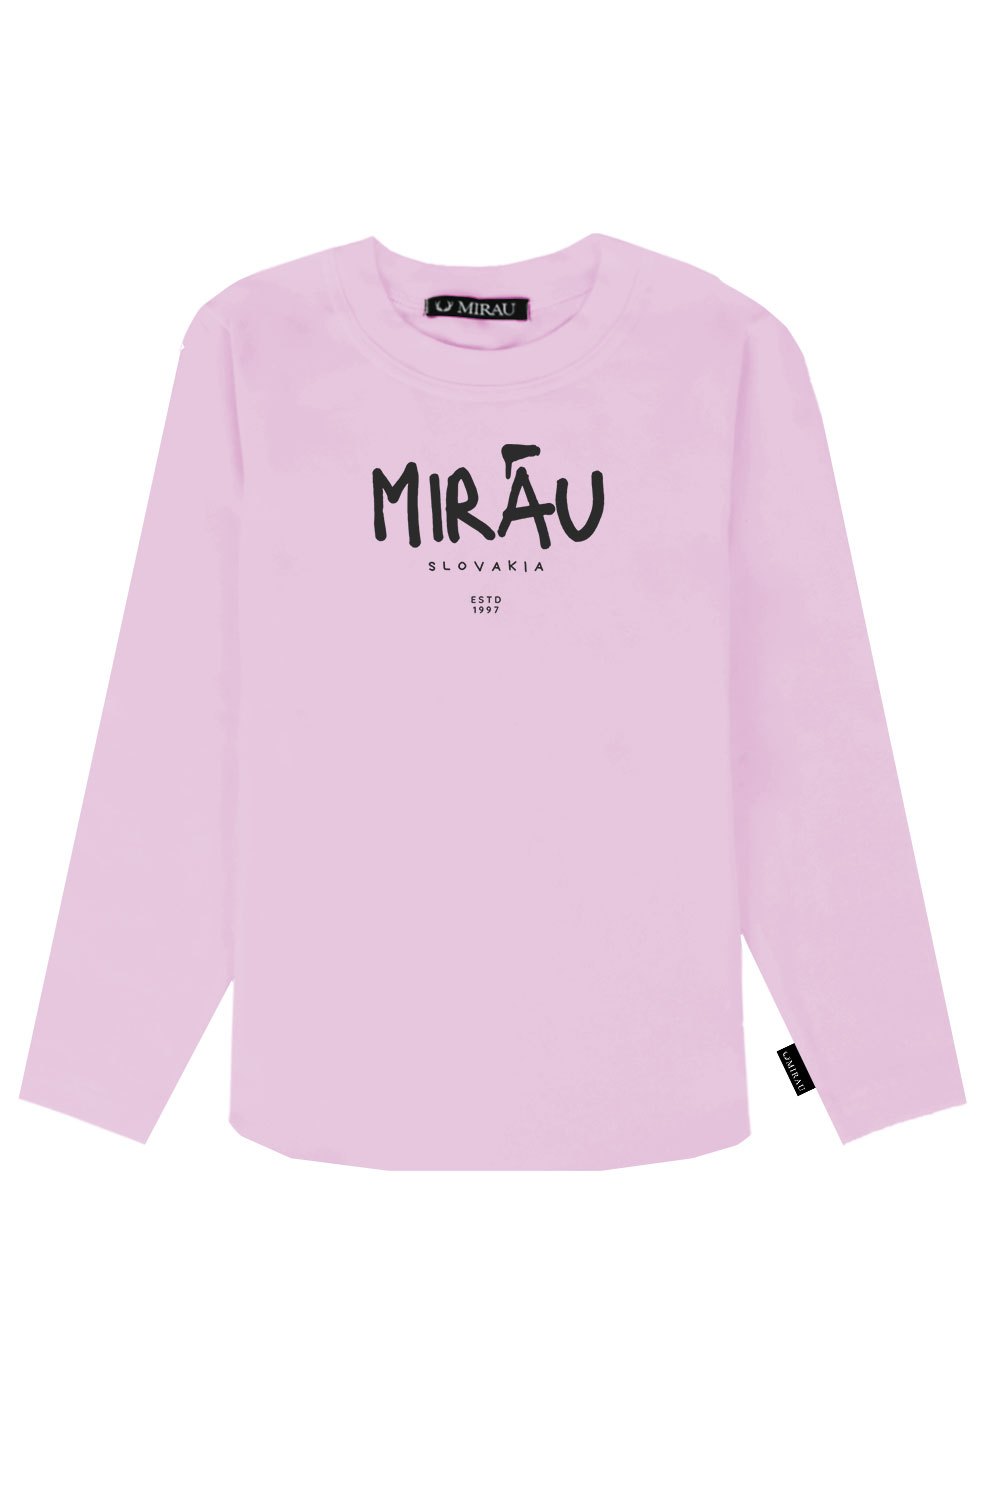 Dívčí tričko - Mirau Est 1997